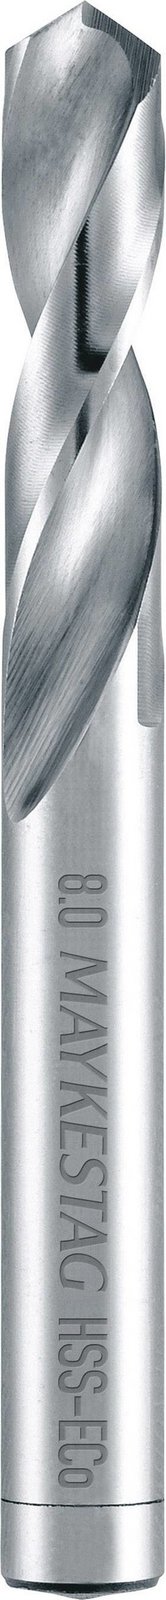 Alpen 92100850100 HSS-E kovový spirálový vrták  8.5 mm Celková délka 79 mm Cobalt DIN 1897 válcová stopka 1 ks